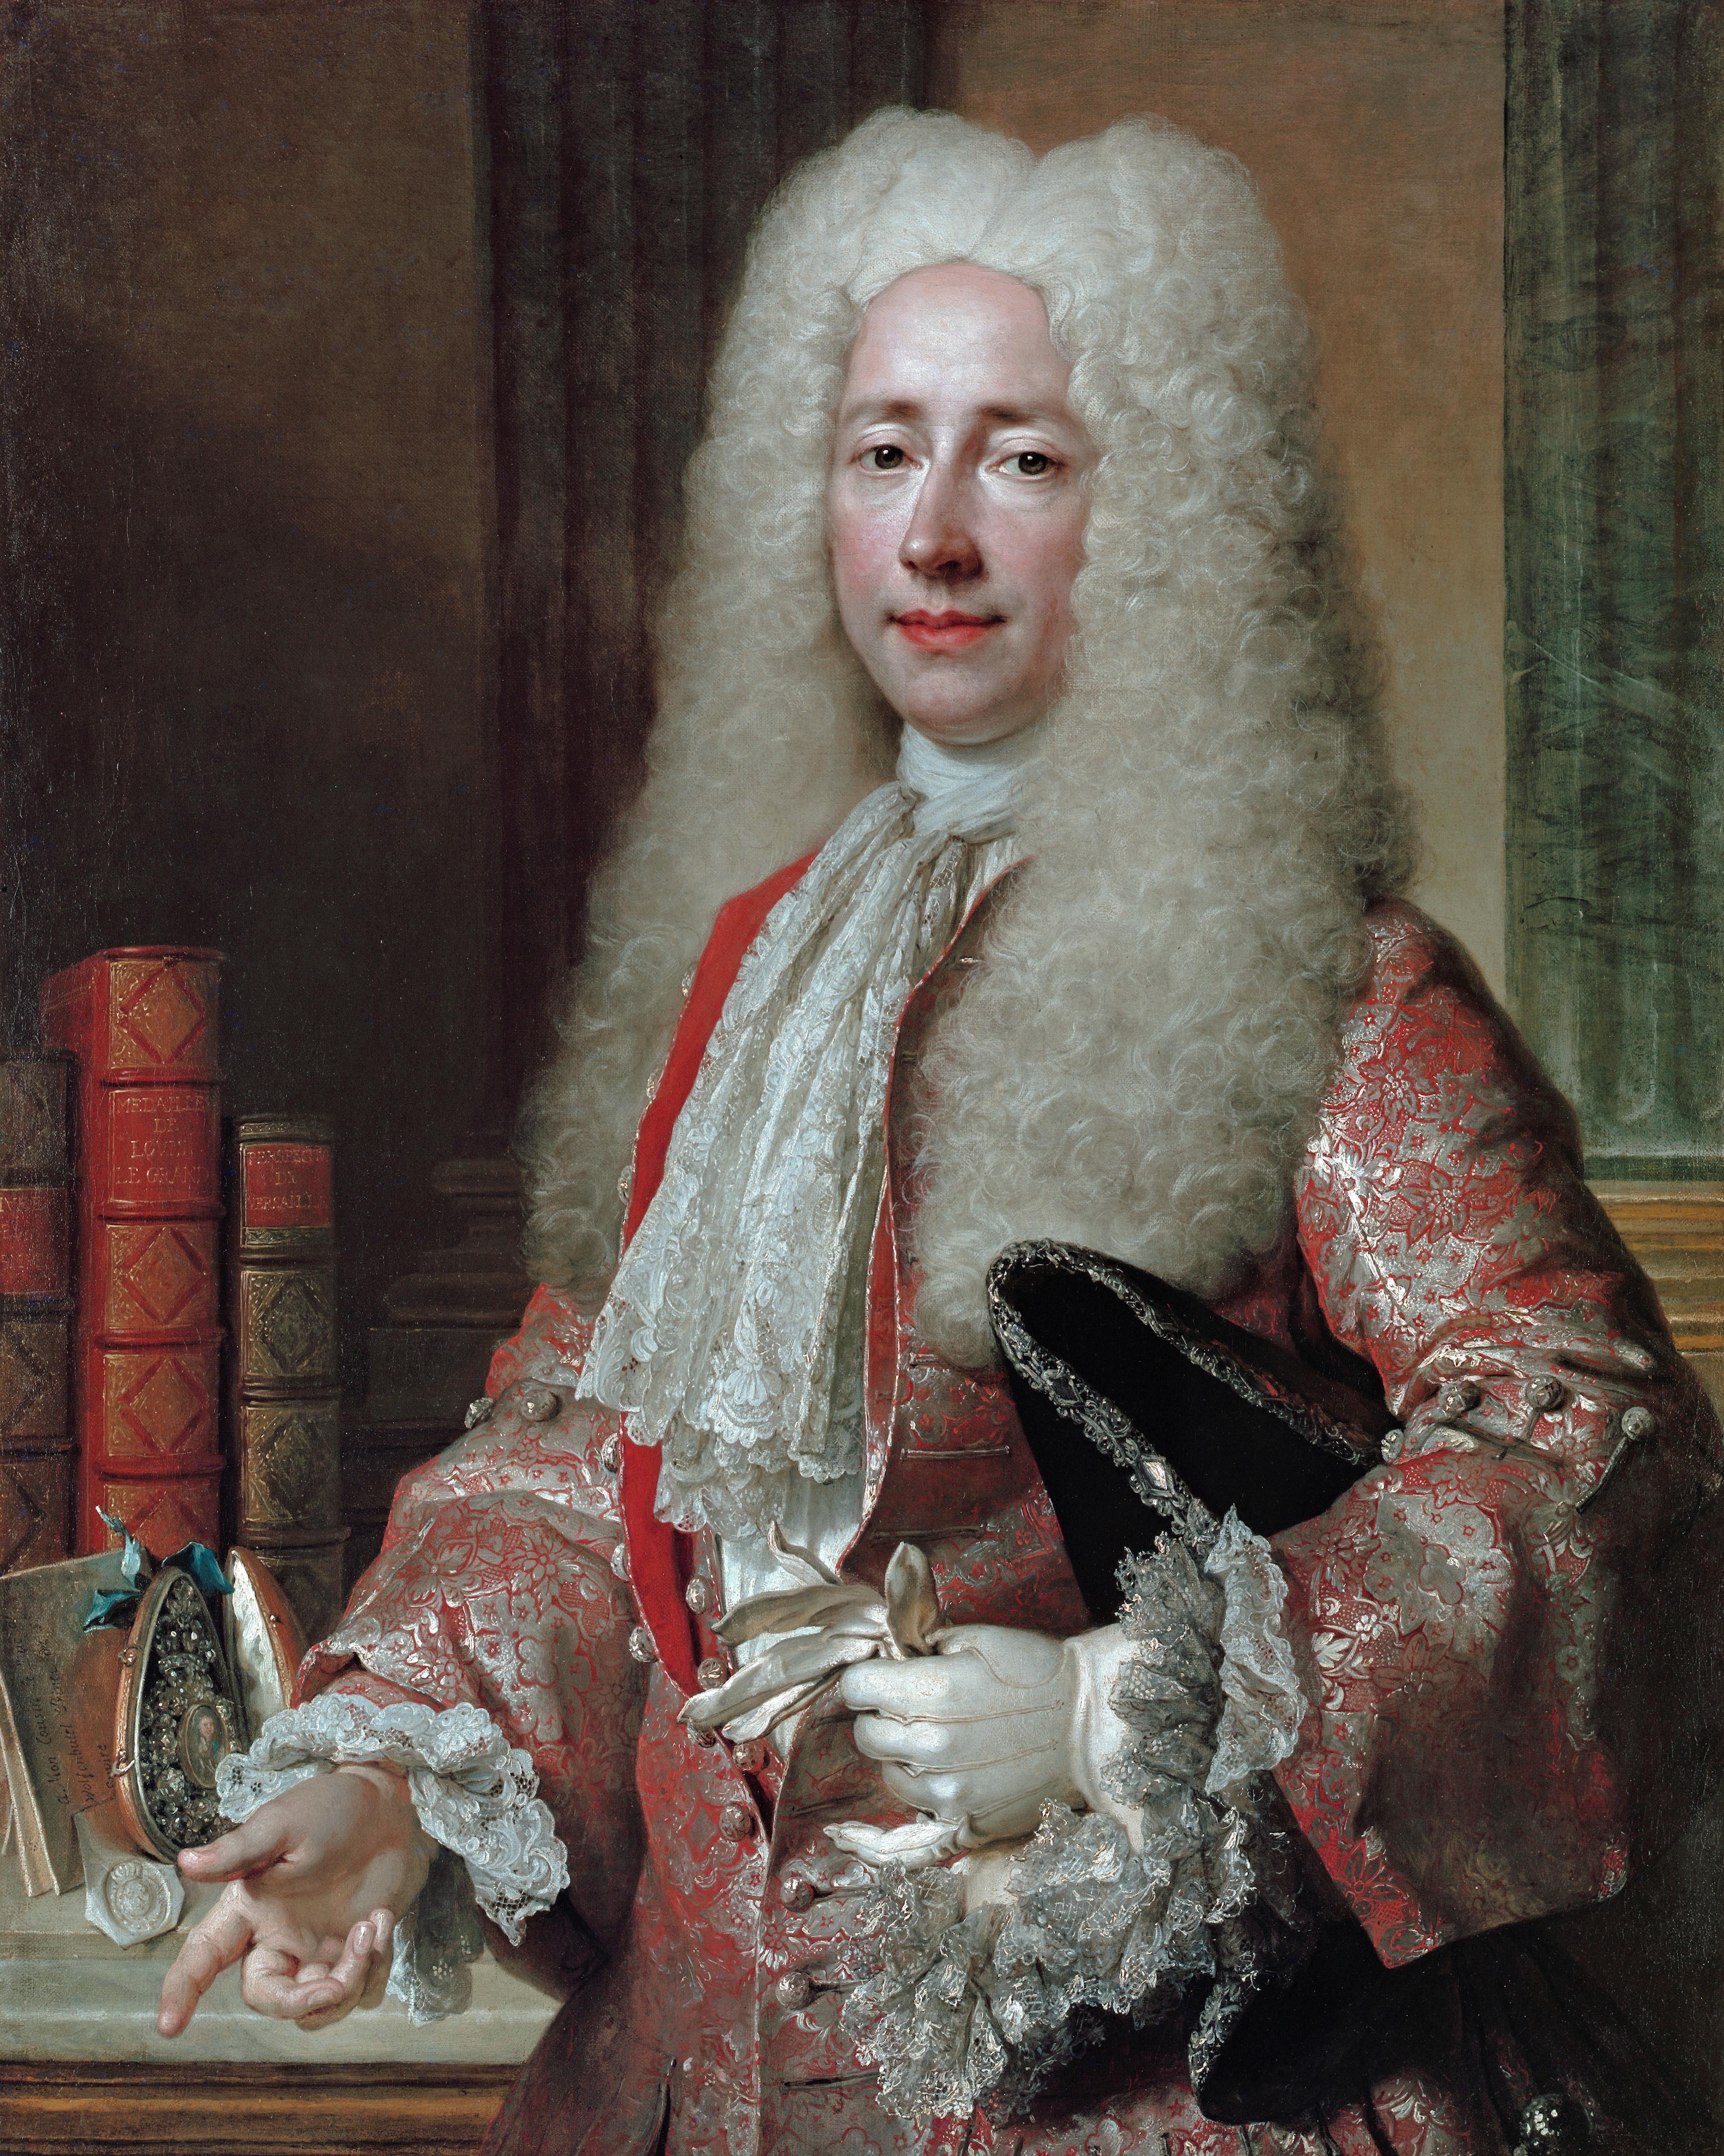 Portrait of Monsieur Aubert, a ceremonial portrait by Nicolas de Largillière For Sale 2